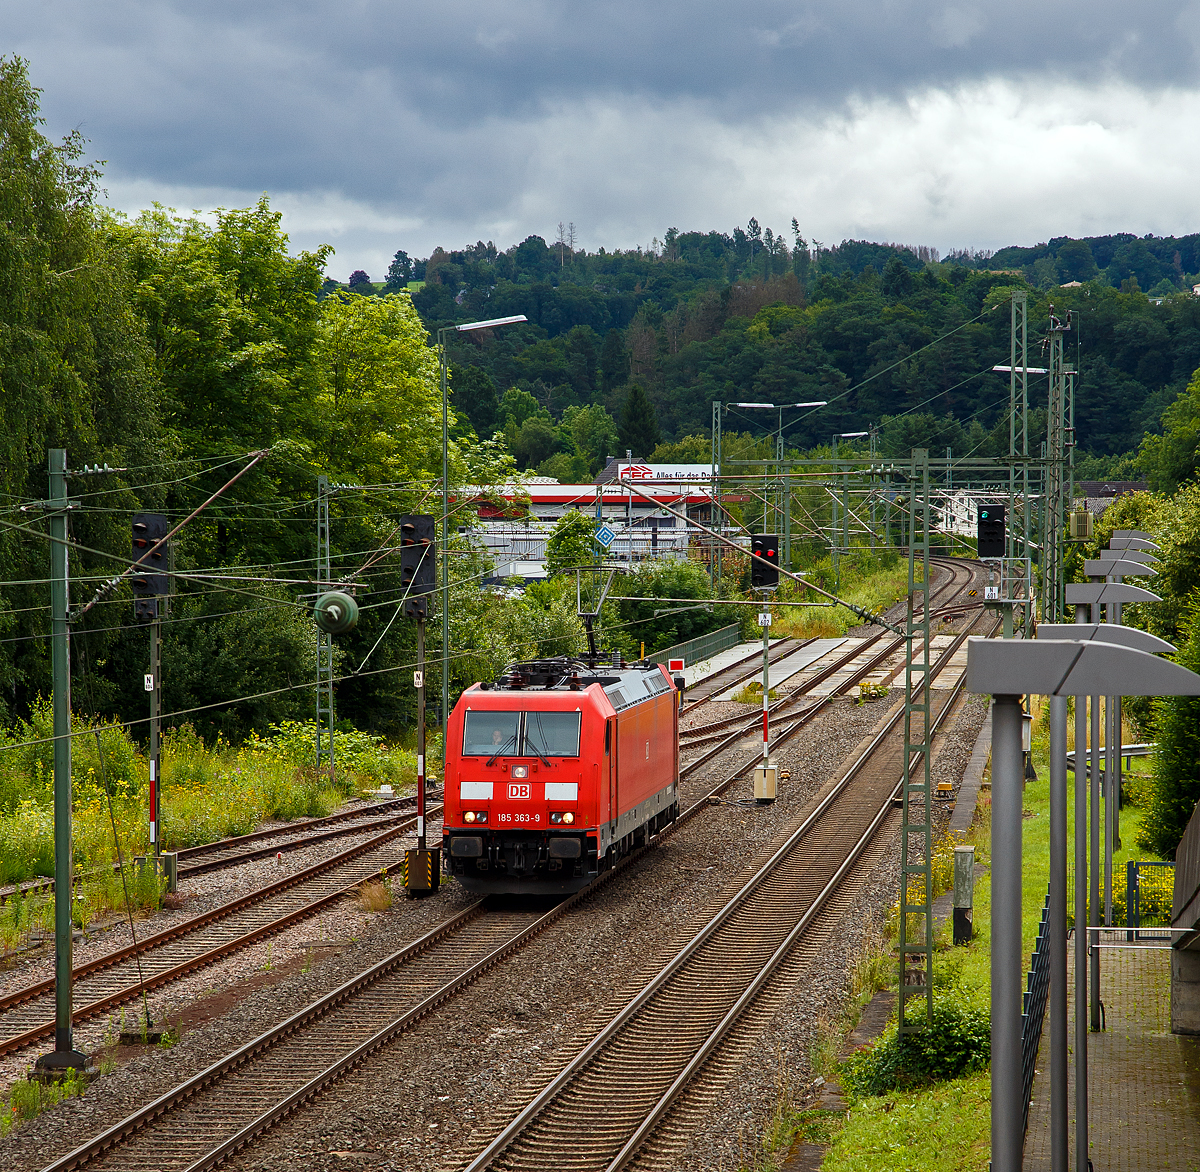 Die 185 363-9 (91 80 6185 363-3 D-DB) der DB Cargo Deutschland AG fährt am 15.07.2021 als Tfzf (Triebfahrzeugfahrt) bzw. Lz (Lokzug) durch Wissen (Sieg) in Richtung Köln. Aufgenommen vom Parkdeck des Bahnhofes Wissen (Sieg).

Die TRAXX F140 AC2 wurde 2009 von Bombardier in Kassel unter der Fabriknummer 34284 gebaut.
